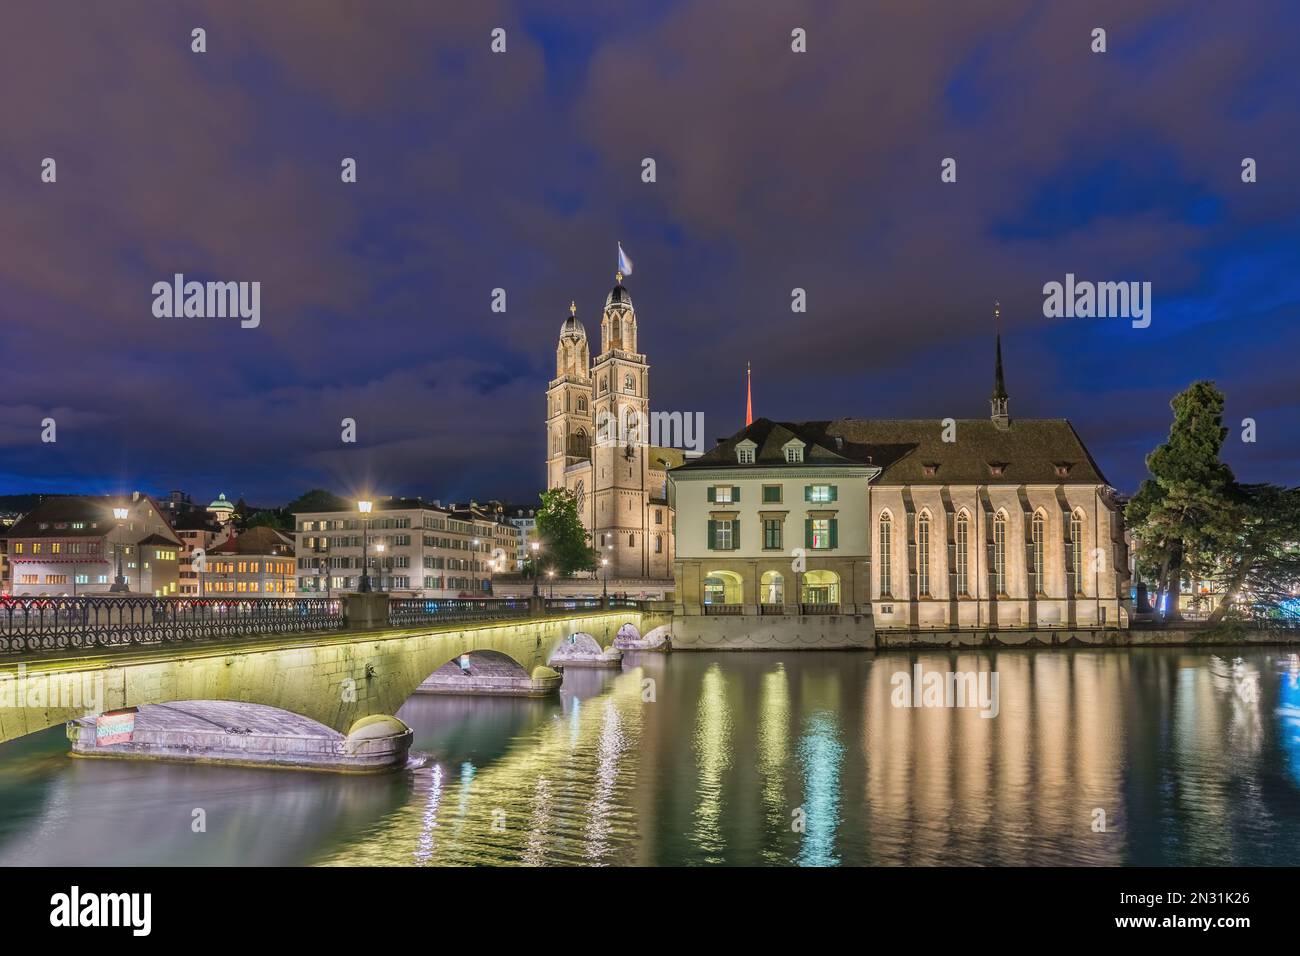 Zurich Switzerland, night city skyline at Grossmunster Church and Munster Bridge Stock Photo